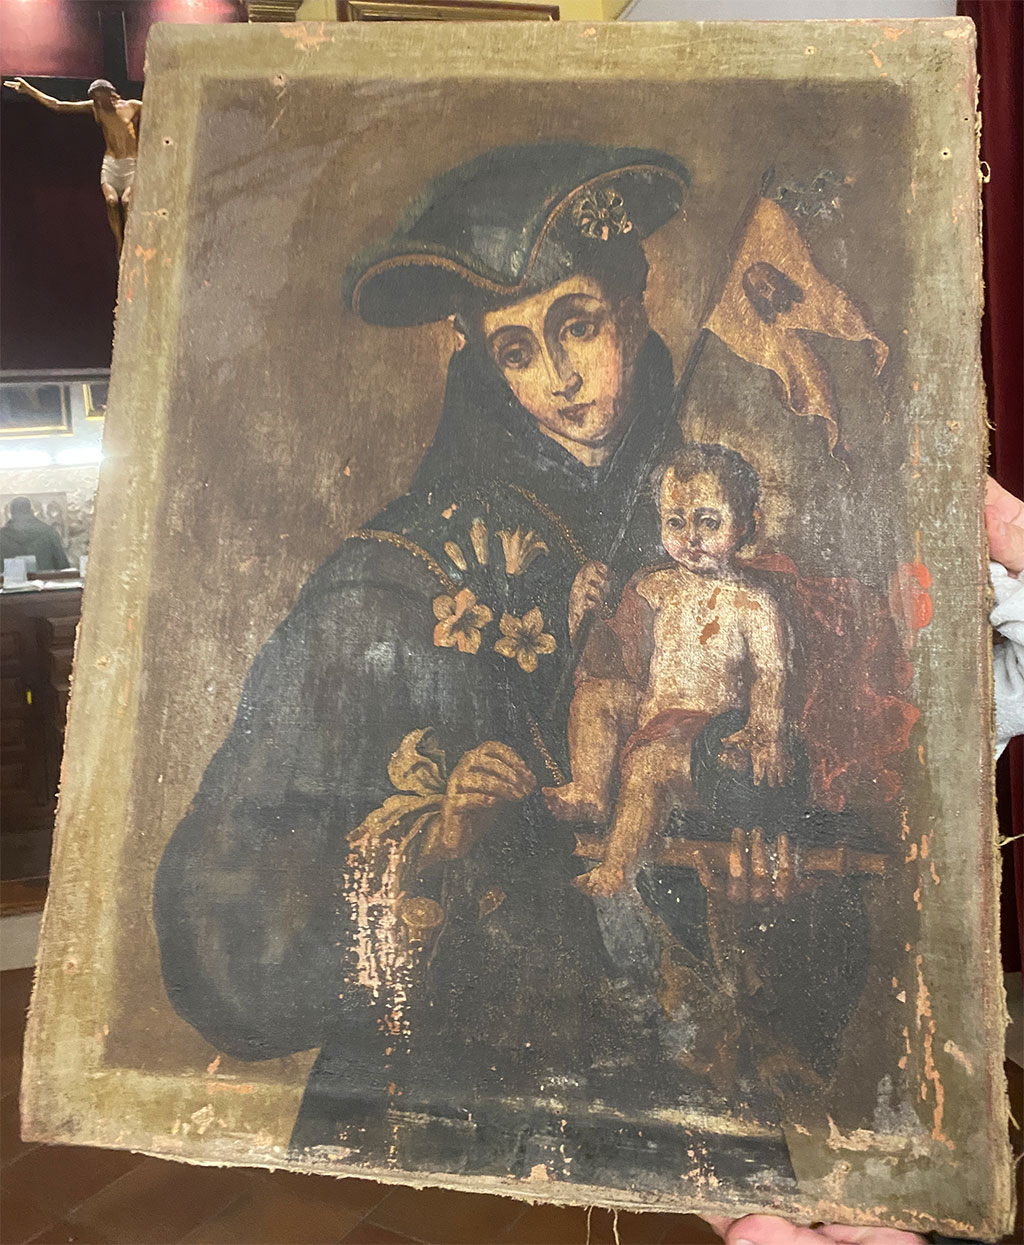 Aparece escondido un lienzo de San Antonio de Padua de principios del siglo XVIII